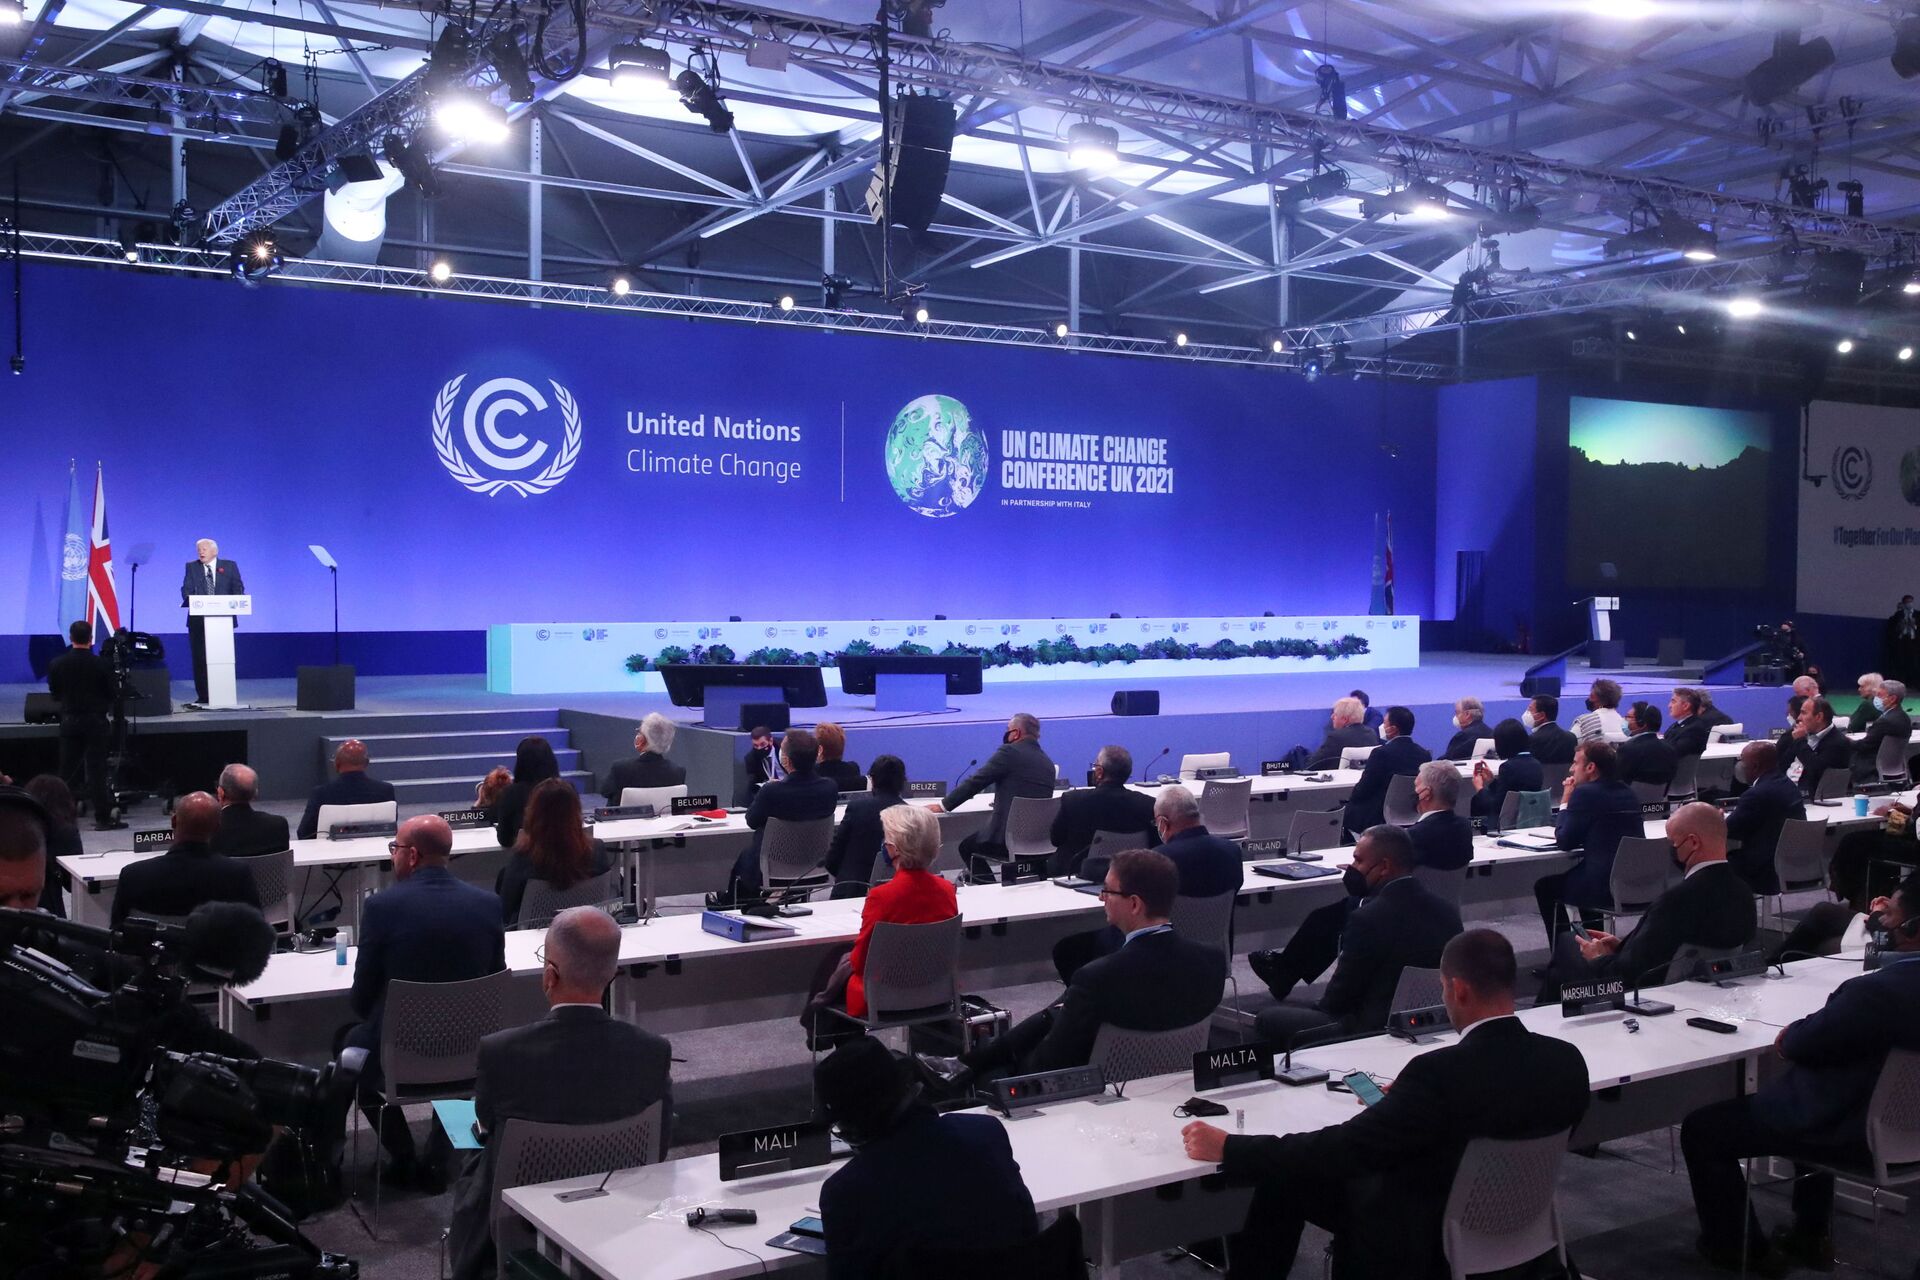 Sir David Attenborough discursa na cerimônia de abertura da Conferência das Nações Unidas sobre Mudança Climática (COP26) em Glasgow, Escócia, Grã-Bretanha, 1 de novembro de 2021 - Sputnik Brasil, 1920, 09.11.2021